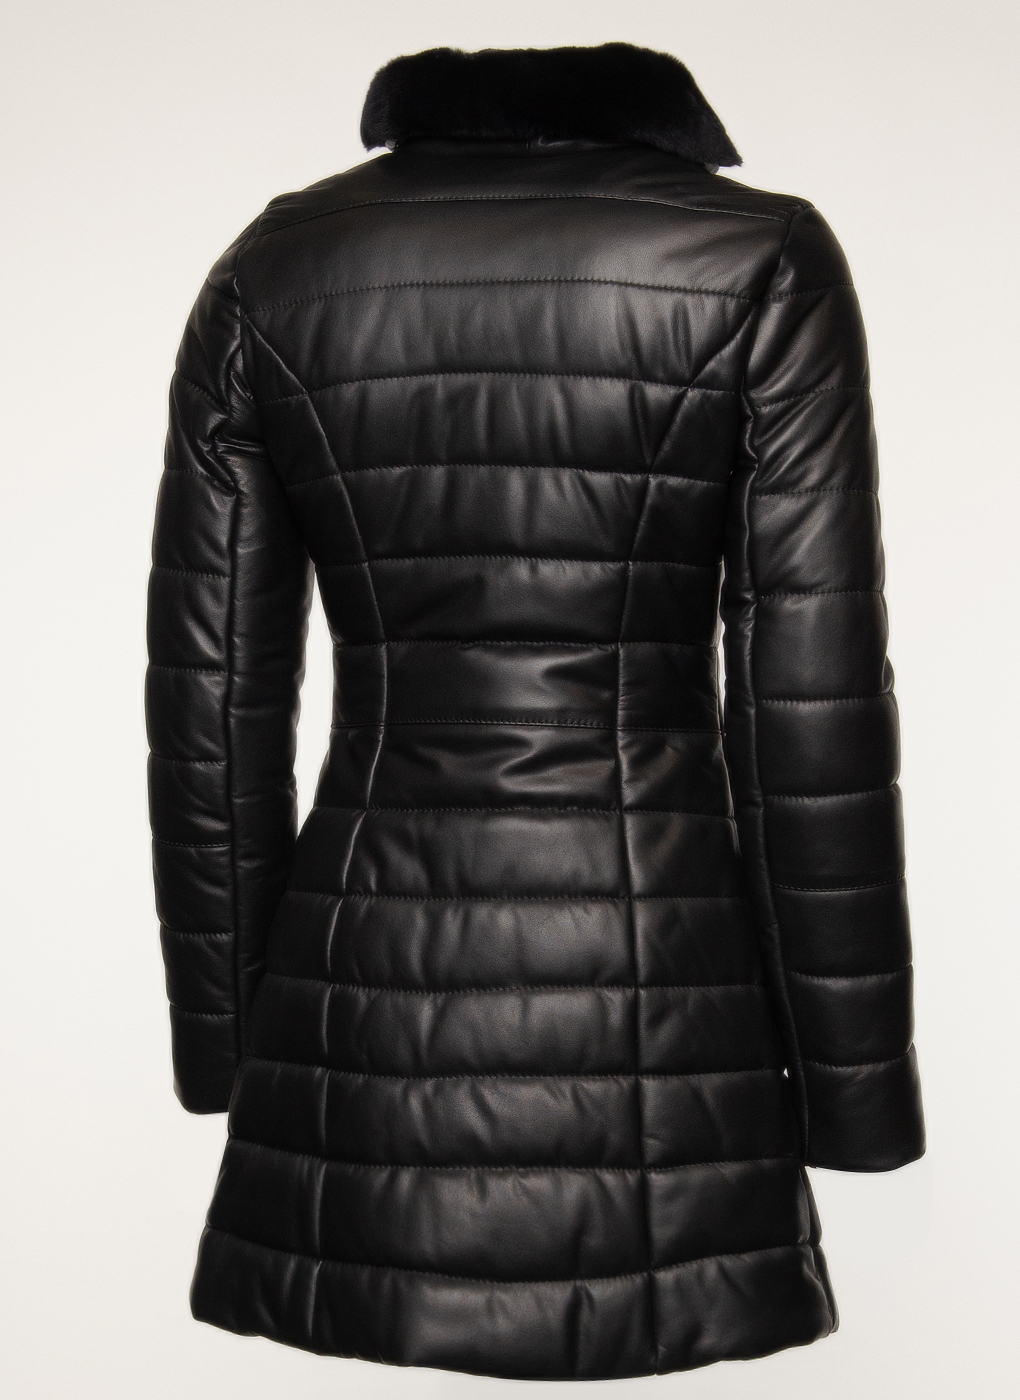 Кожаная куртка женская Imperiafabrik 40874 черная 50 RU